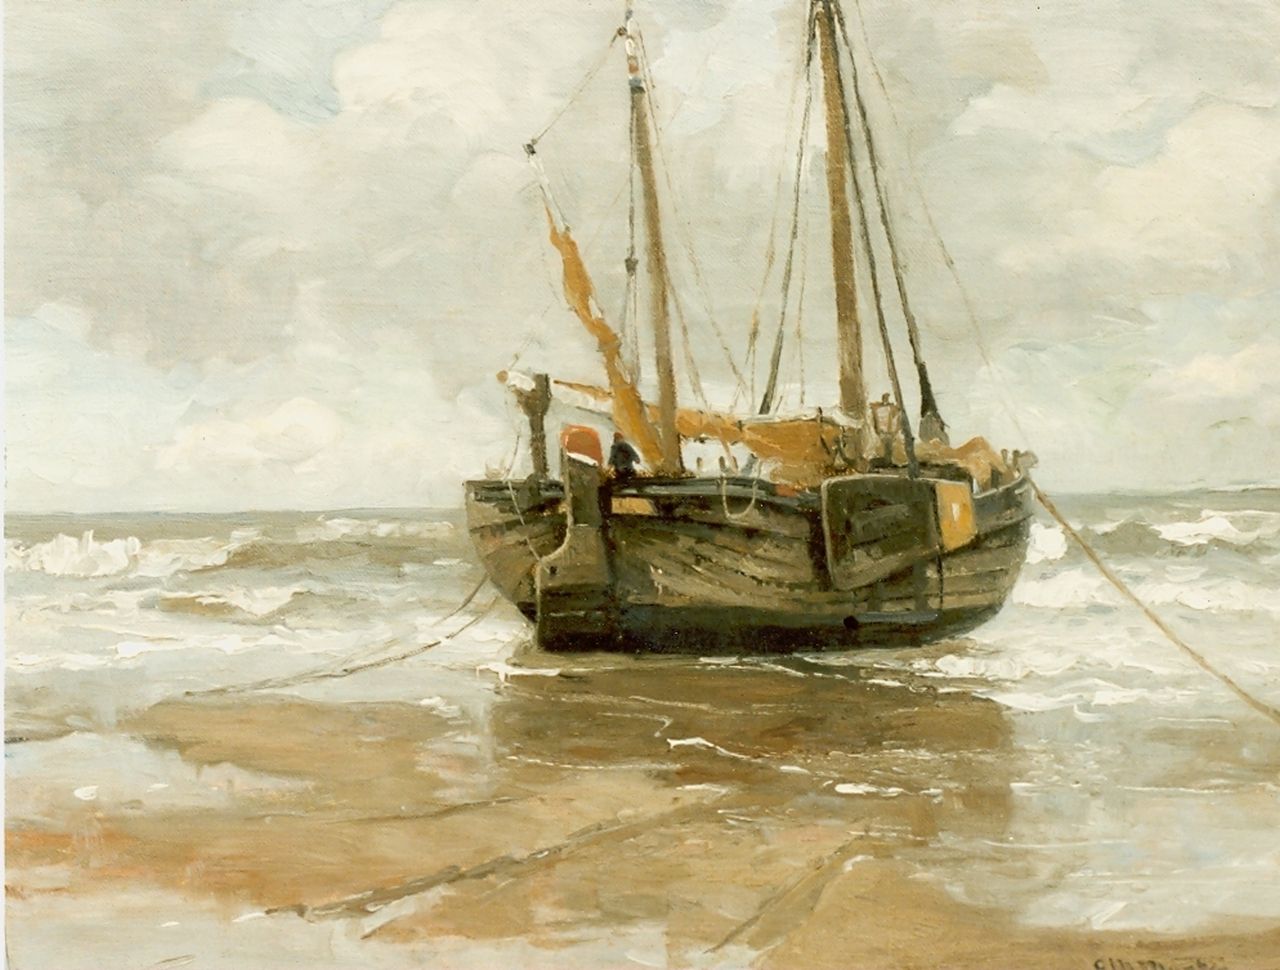 Munthe G.A.L.  | Gerhard Arij Ludwig 'Morgenstjerne' Munthe, Bomschuit op het strand, olieverf op doek op paneel 41,0 x 53,0 cm, gesigneerd rechtsonder